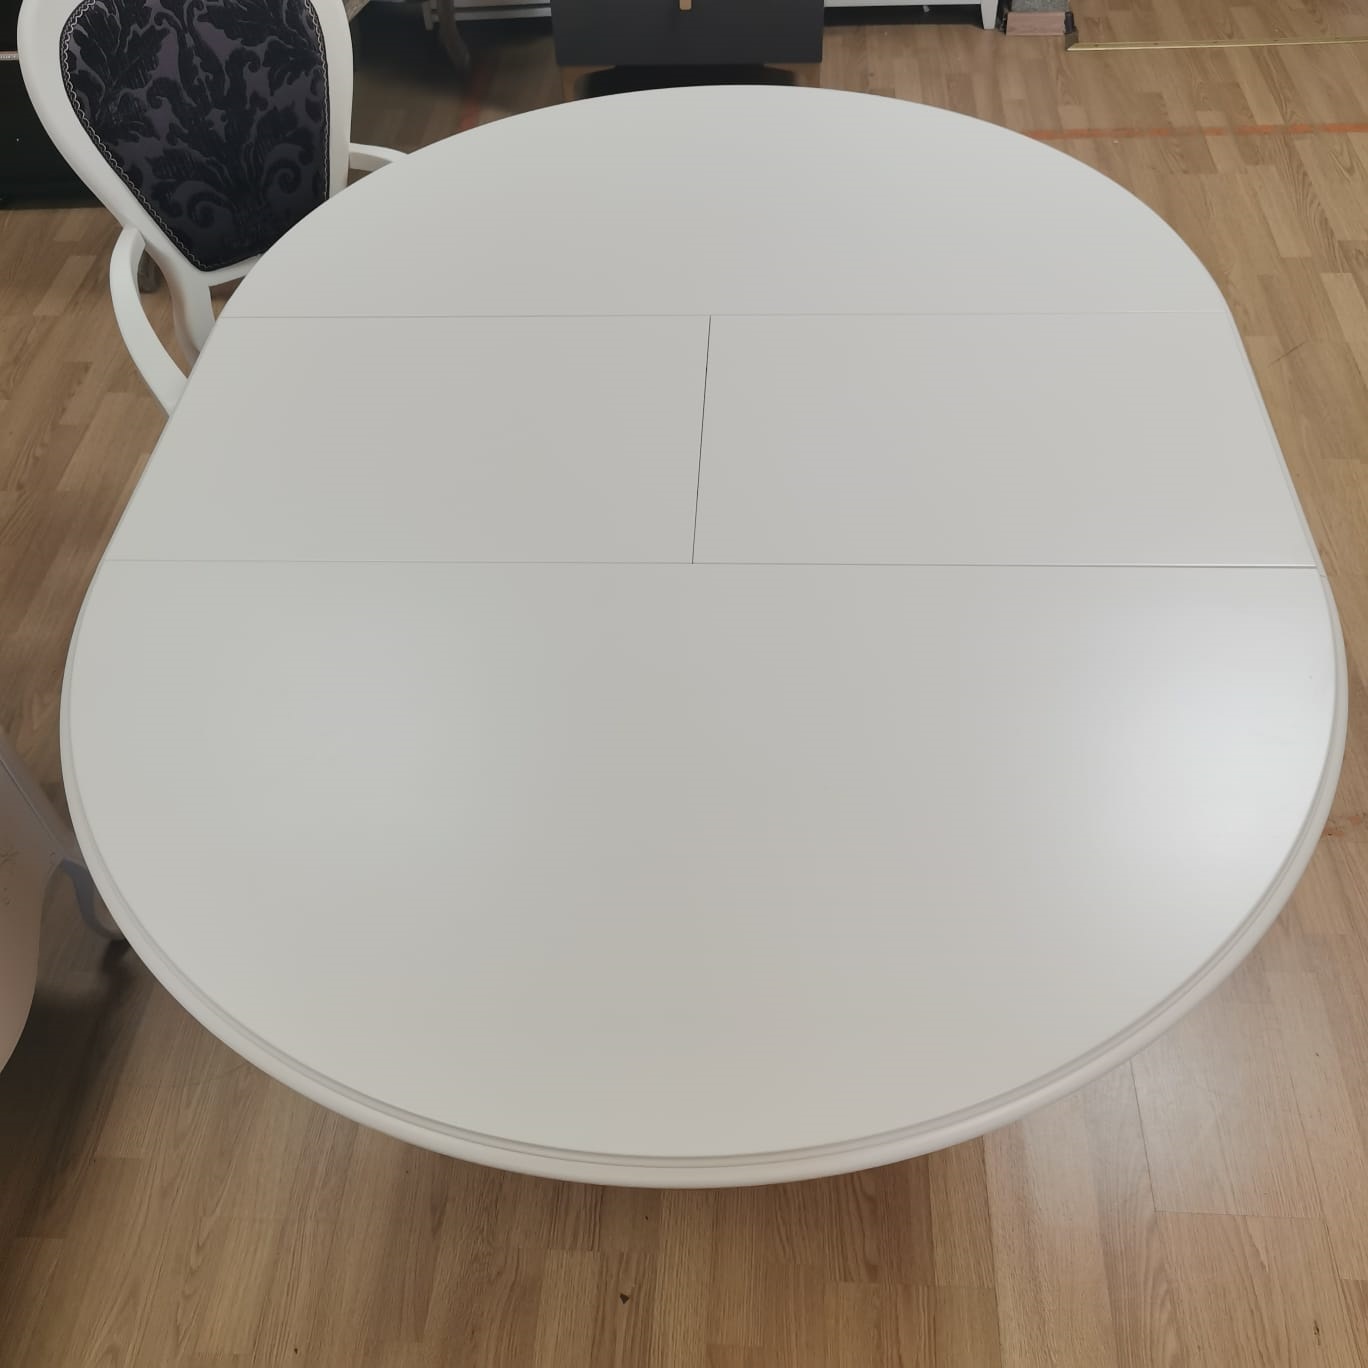 Стол обеденный PanaMaro, раздвижной, круглый, цвет: белый, 115(155)x115x78 см (115 blanco) экспо115 Blanco